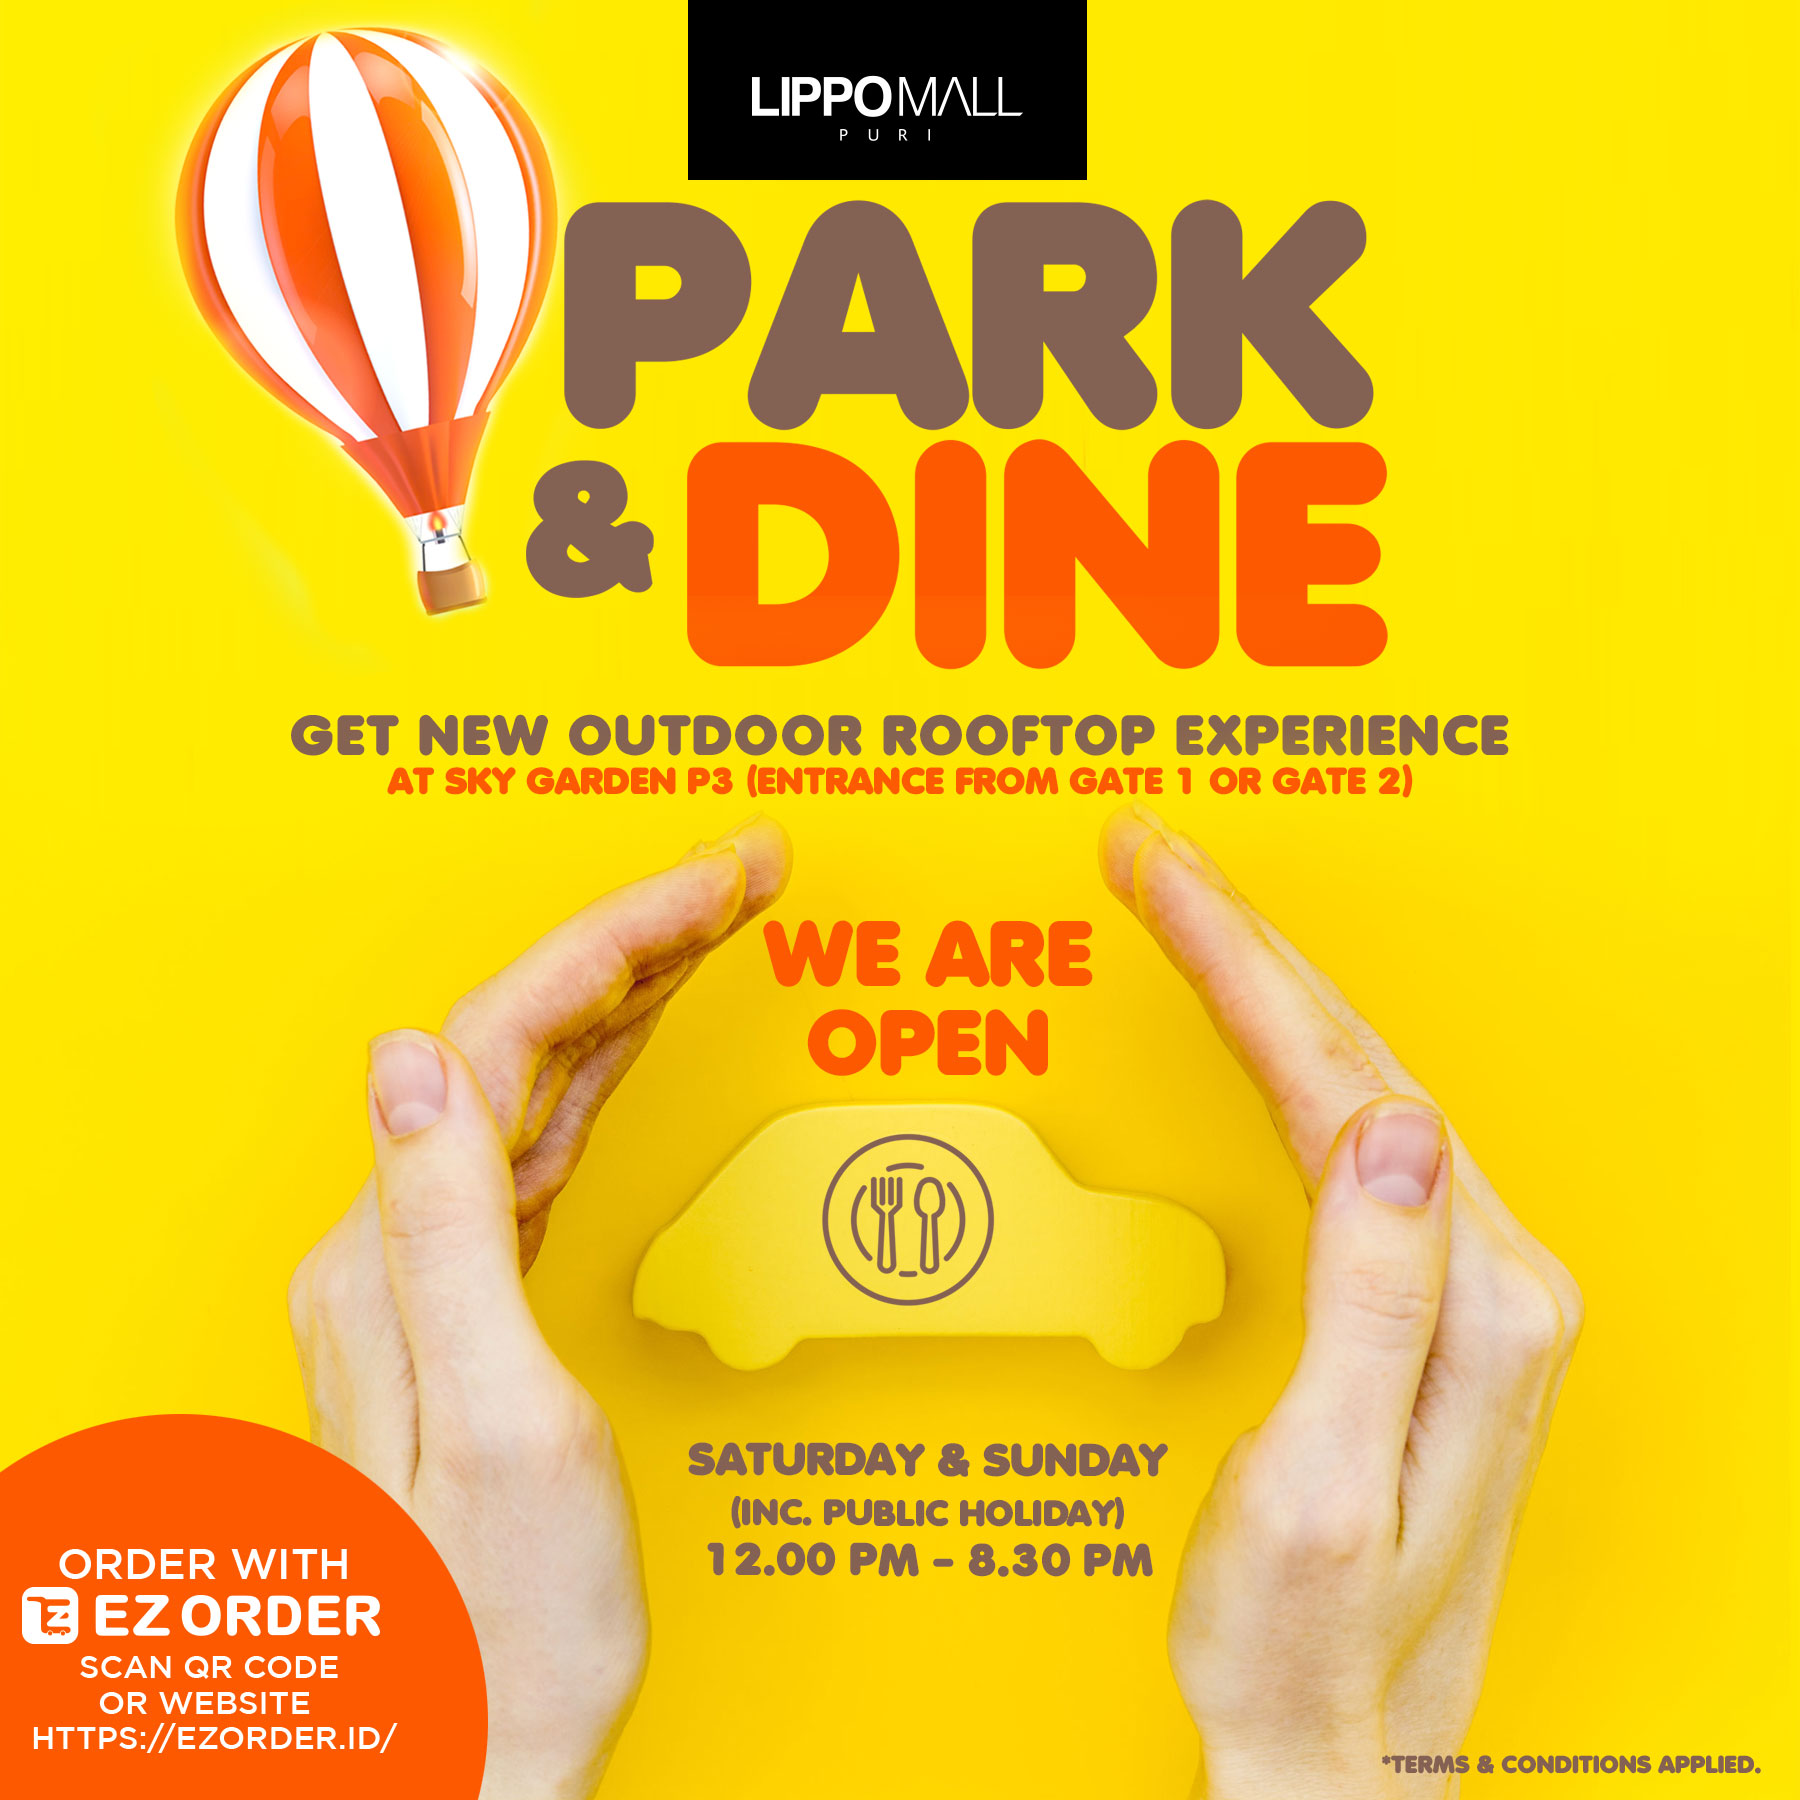 Park & Dine Promo in lippo mall puri st. moritz